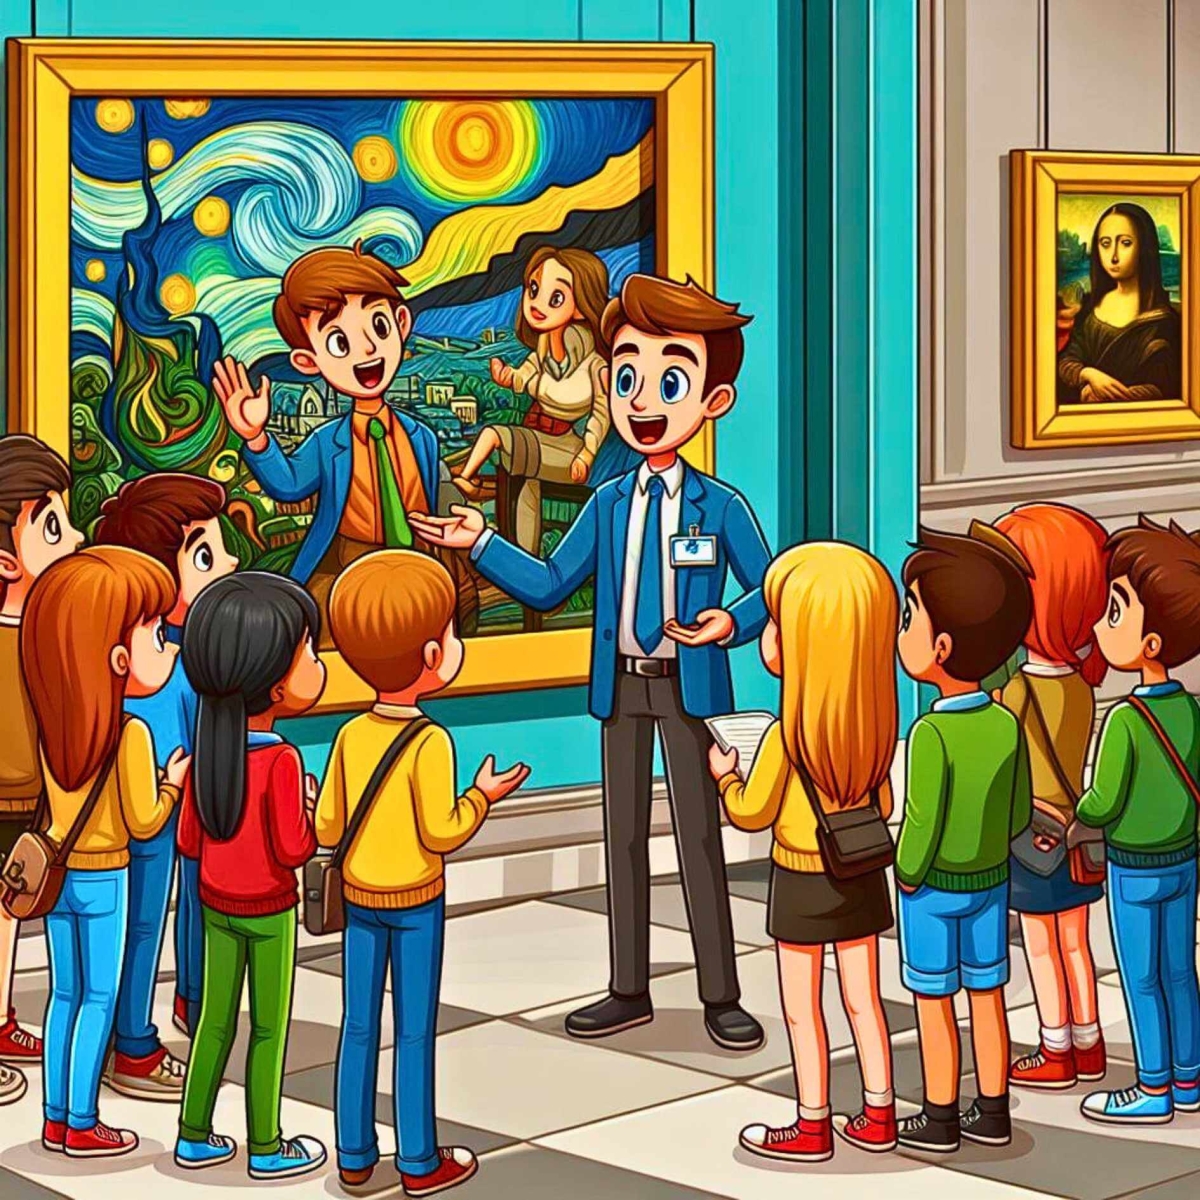 Adolescenti in un museo d'arte e la guida del museo presenta loro un capolavoro e fornisce alcune spiegazioni.